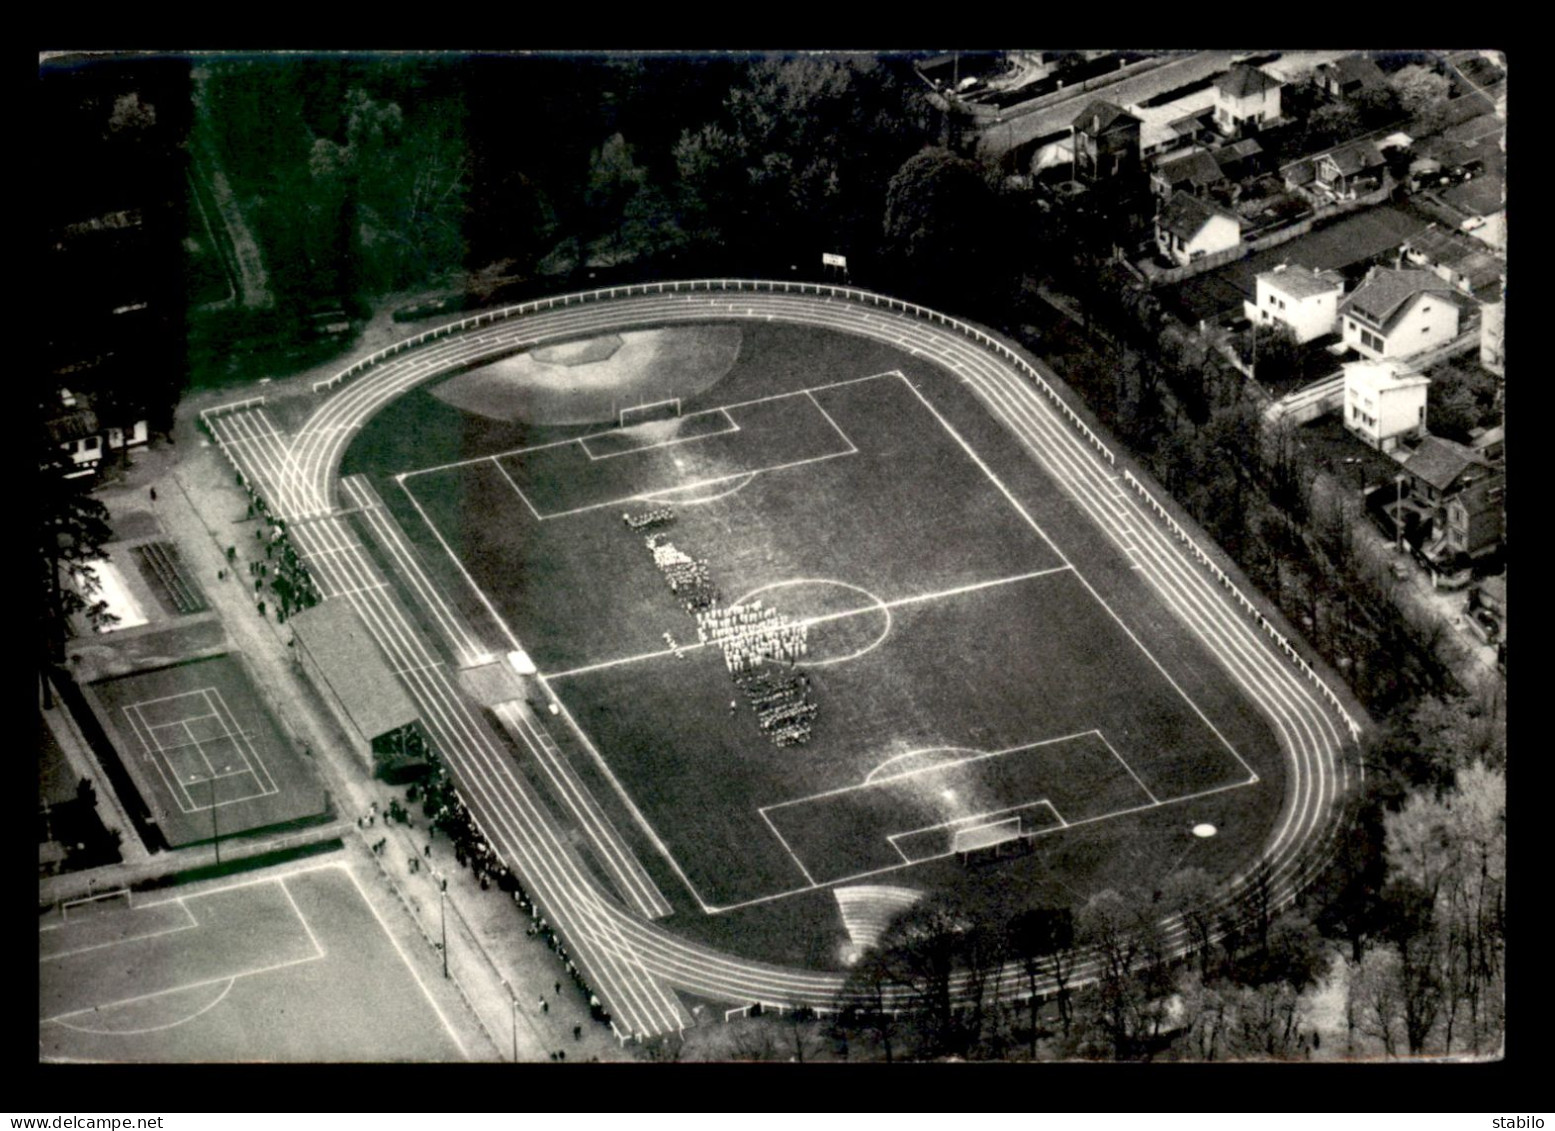 STADES - FOOTBALL - EPINAY-SUR-SEINE (SEINE ST-DENIS) - FETE DE L'ECOLE MUNICIPALE DU SPORT 20 AVRIL 1969 - Estadios